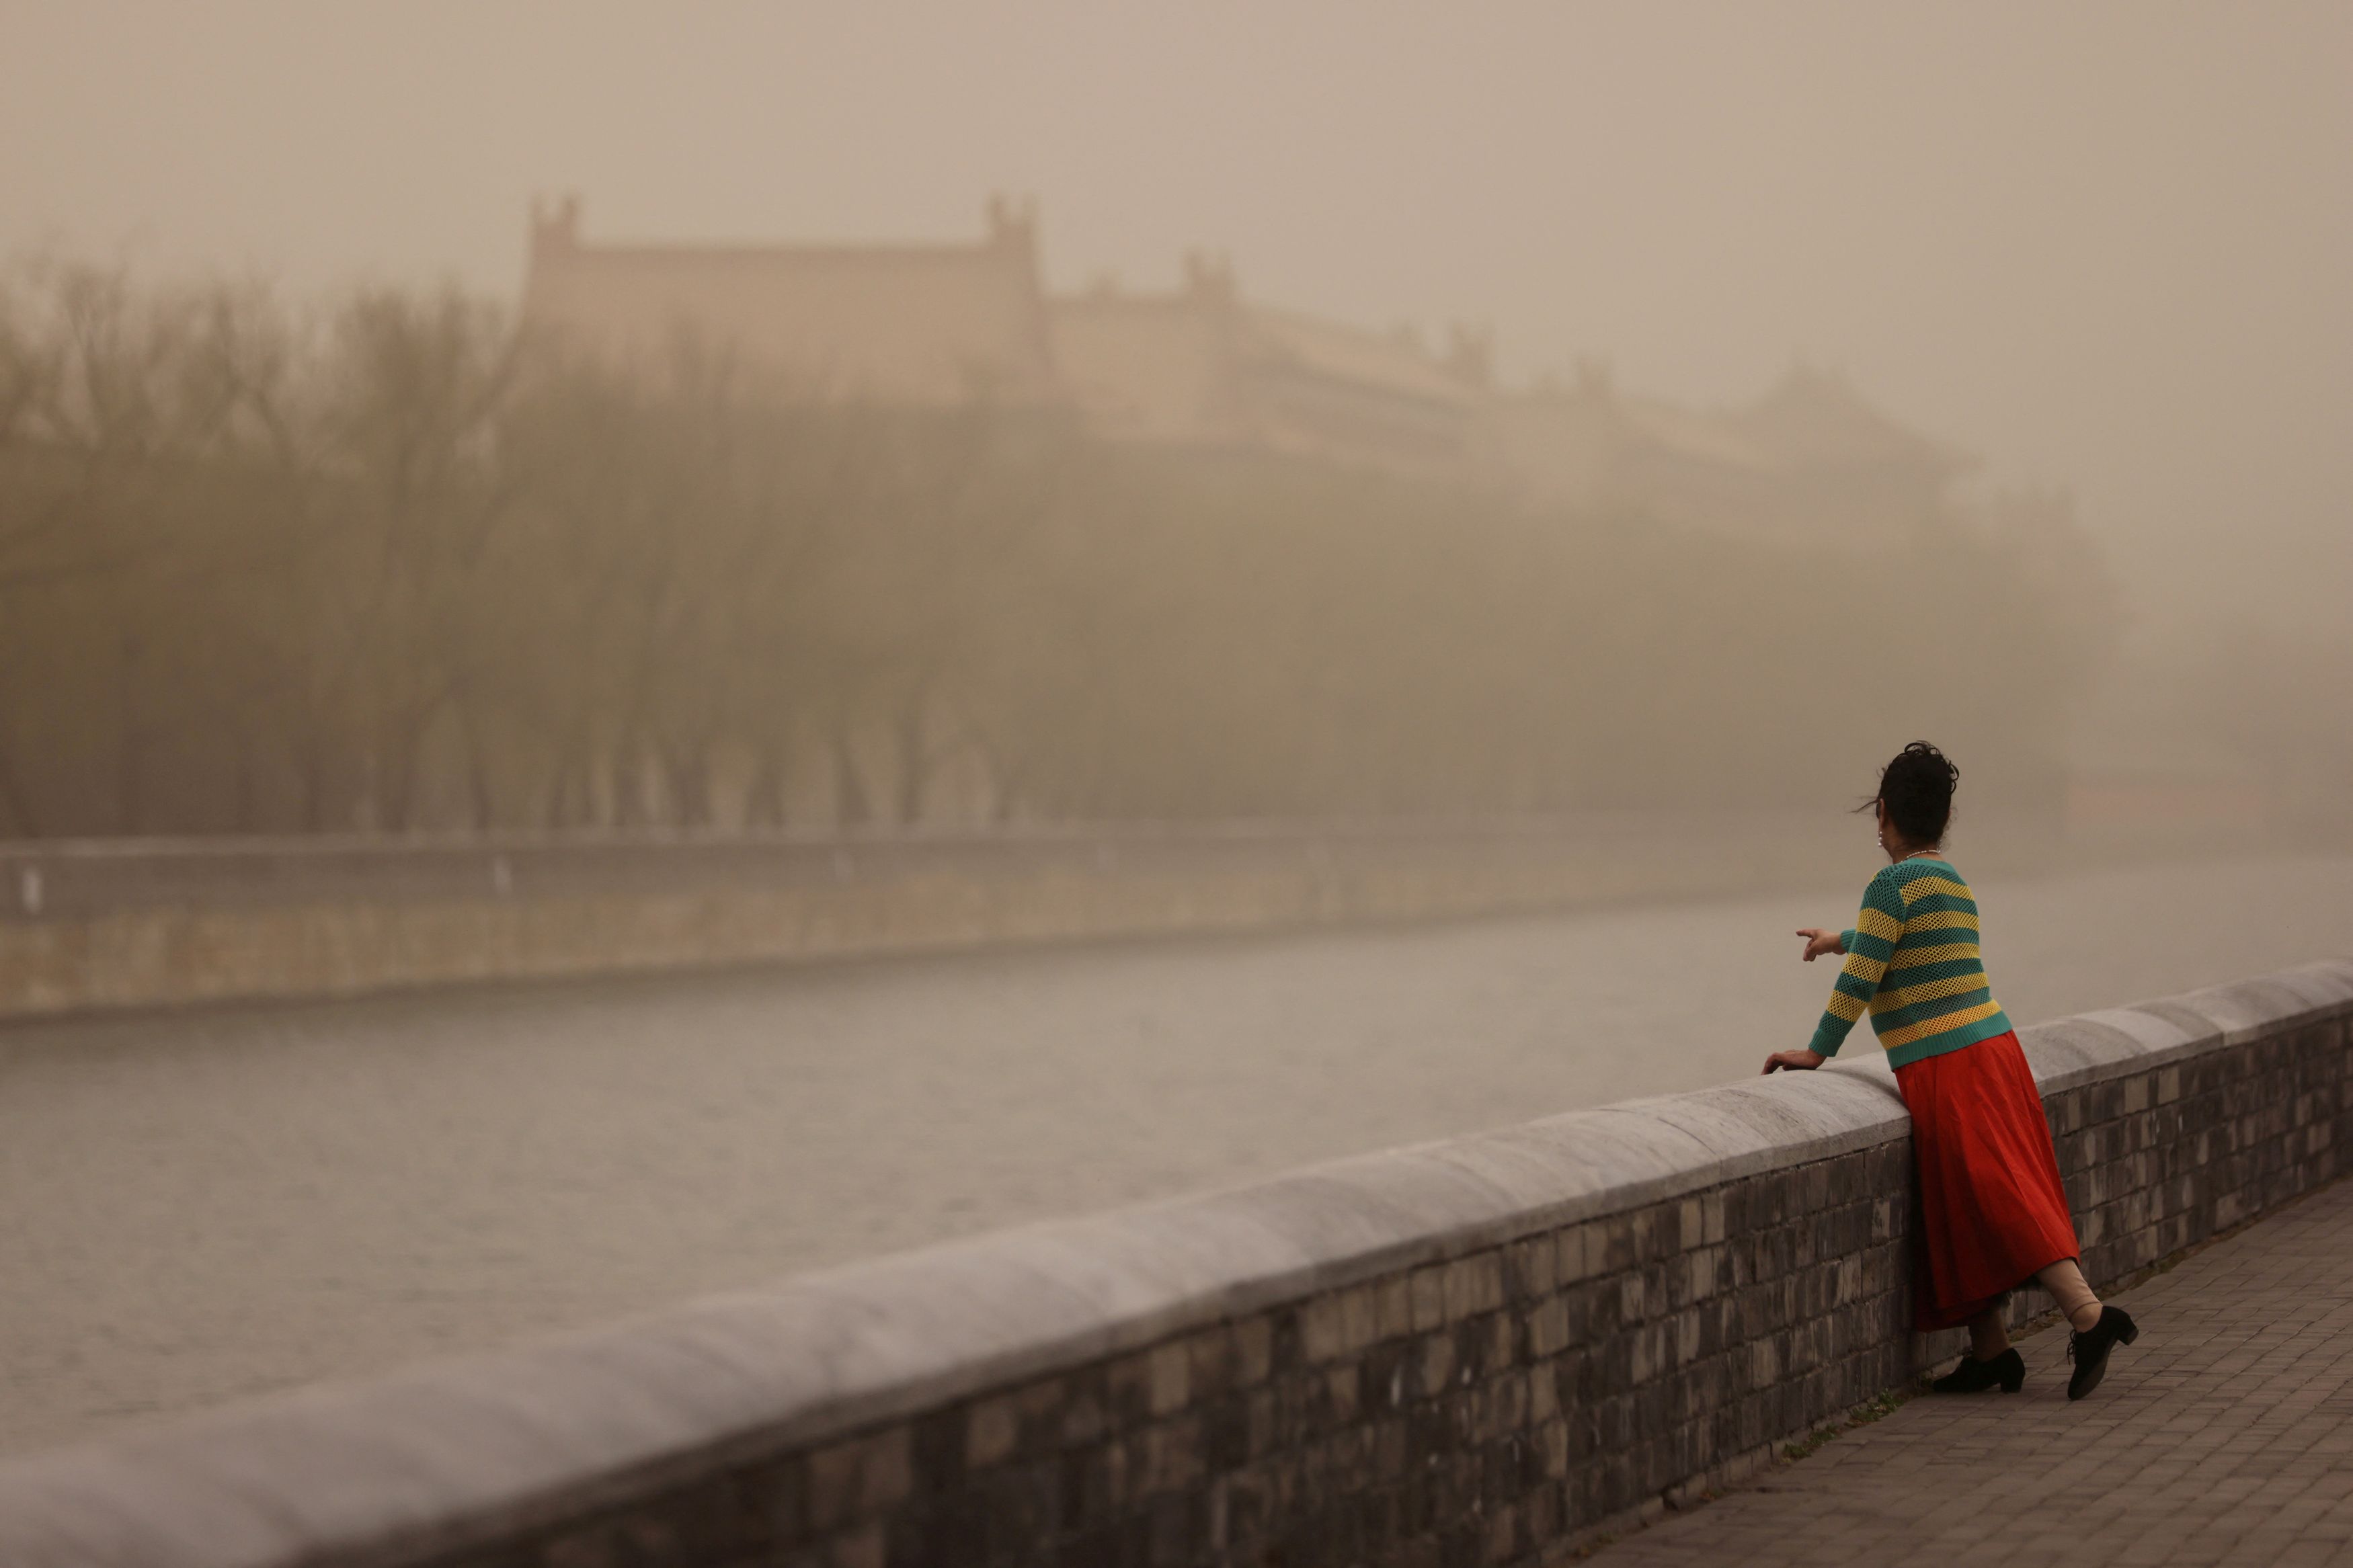 Σφοδρή αμμοθύελλα πλήττει την Κίνα- Επιδεινώνεται η ατμοσφαιρική ρύπανση